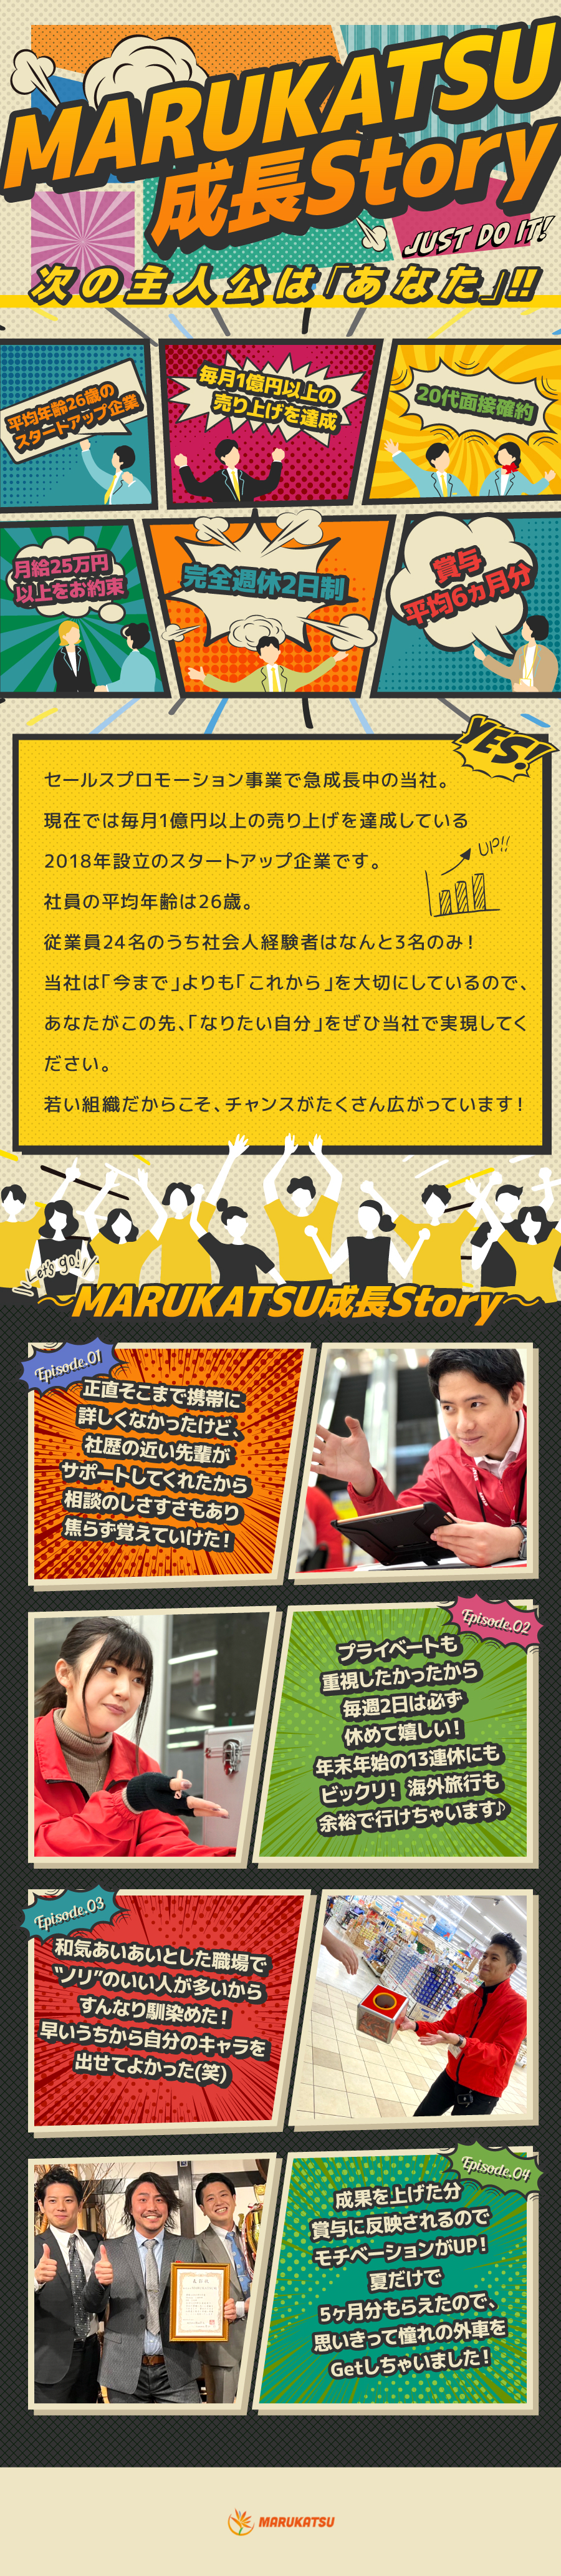 株式会社MARUKATSUからのメッセージ